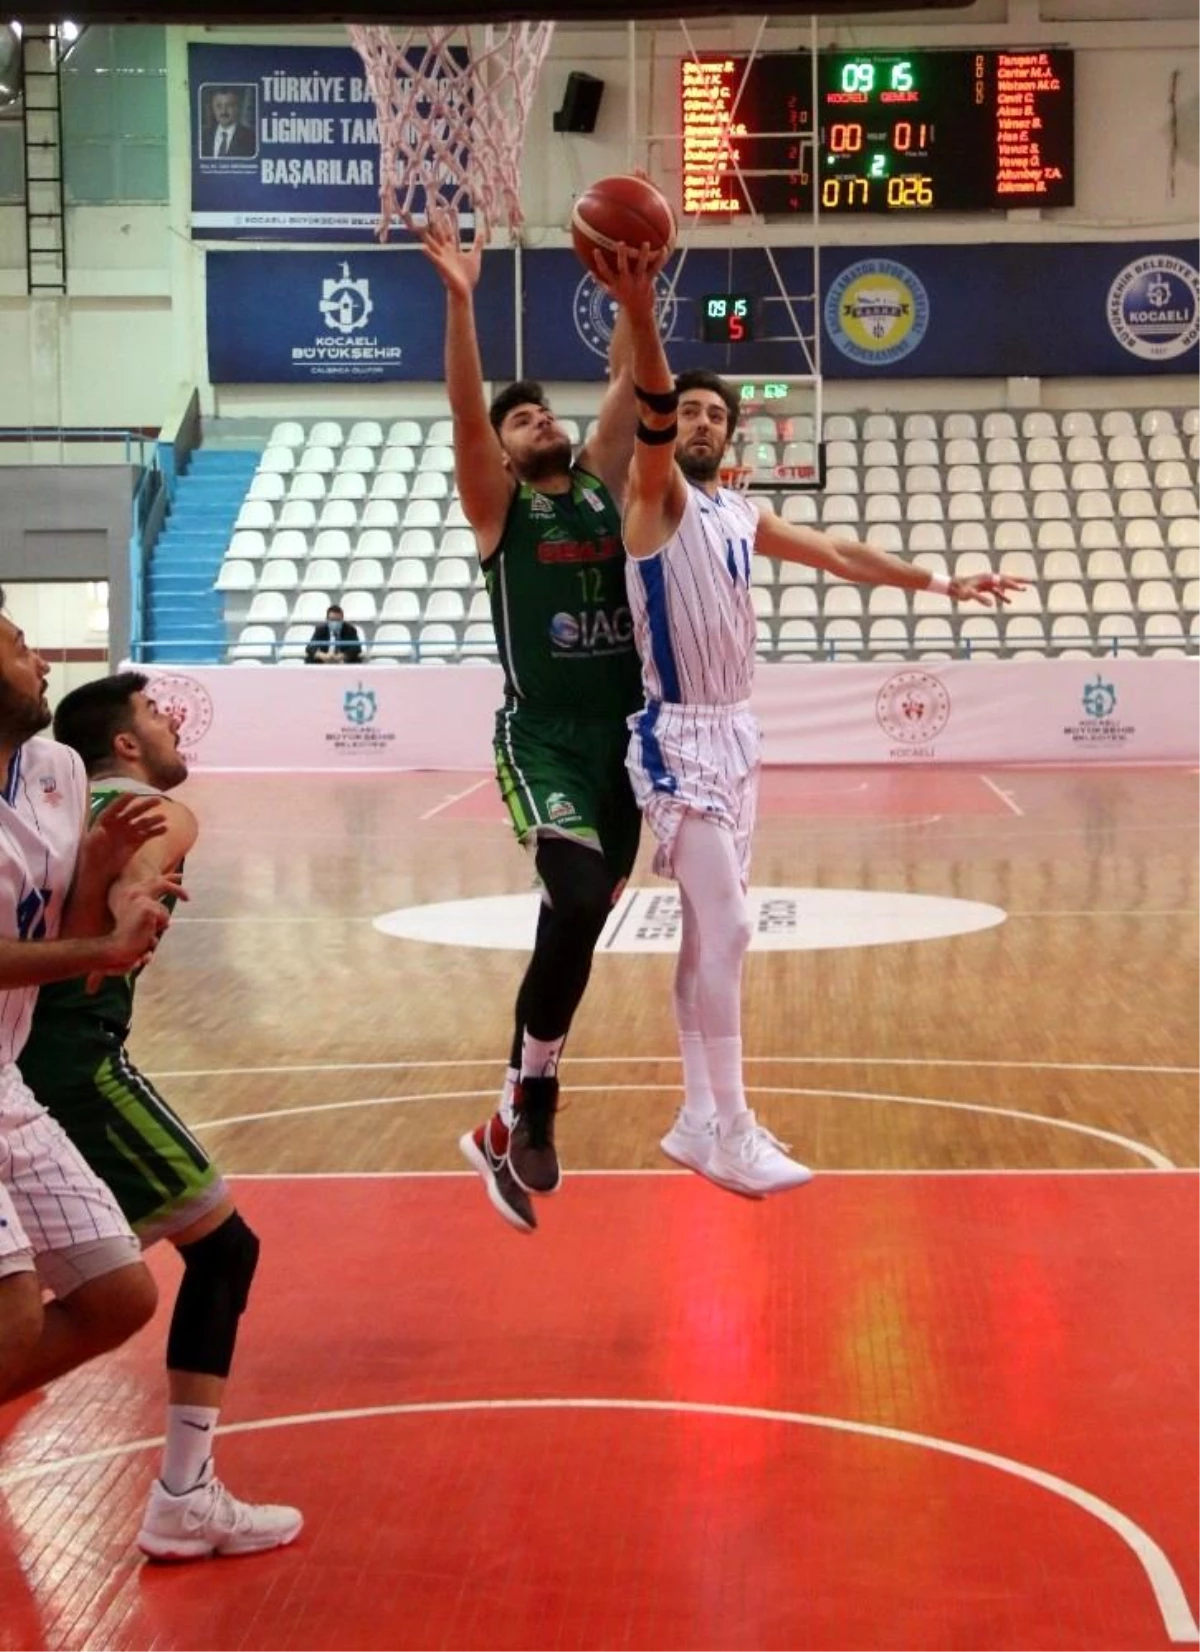 Türkiye Basketbol Ligi: Kocaeli BŞB Kağıtspor: 72 Budo Gemlik: 74